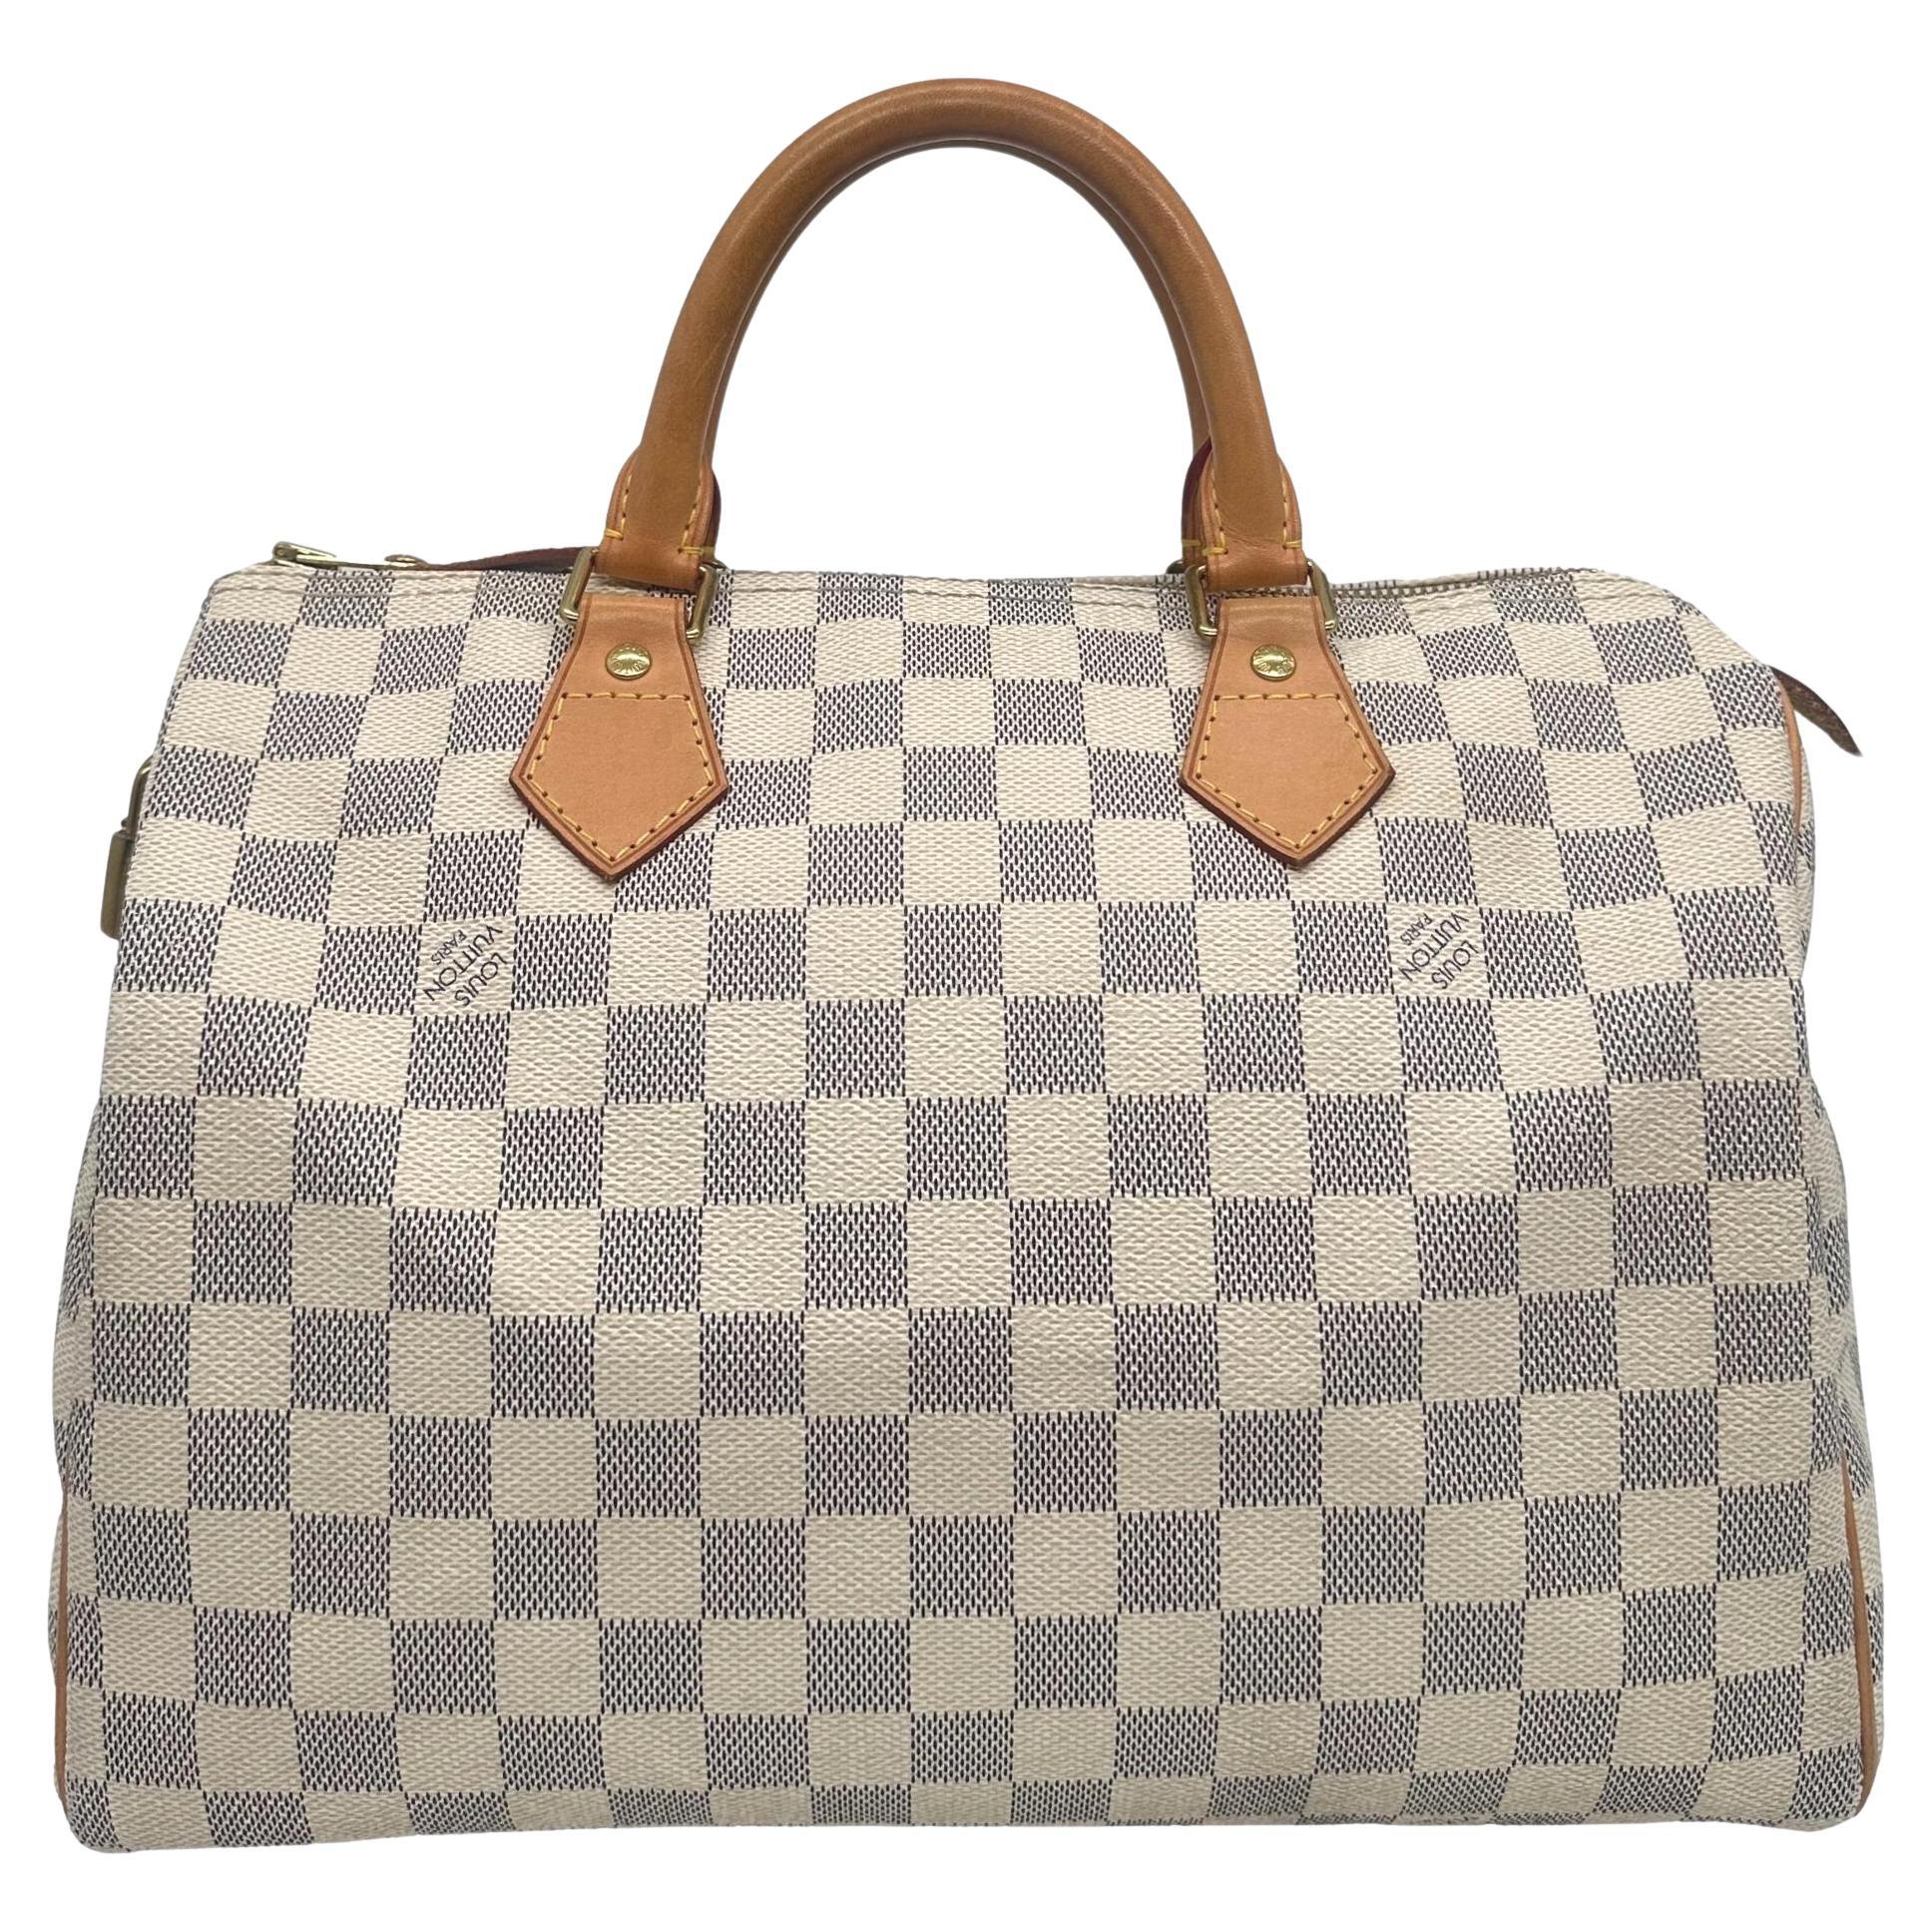 Louis Vuitton Damier Azur Speedy 30 Top Handle Bag, France 2010. For Sale